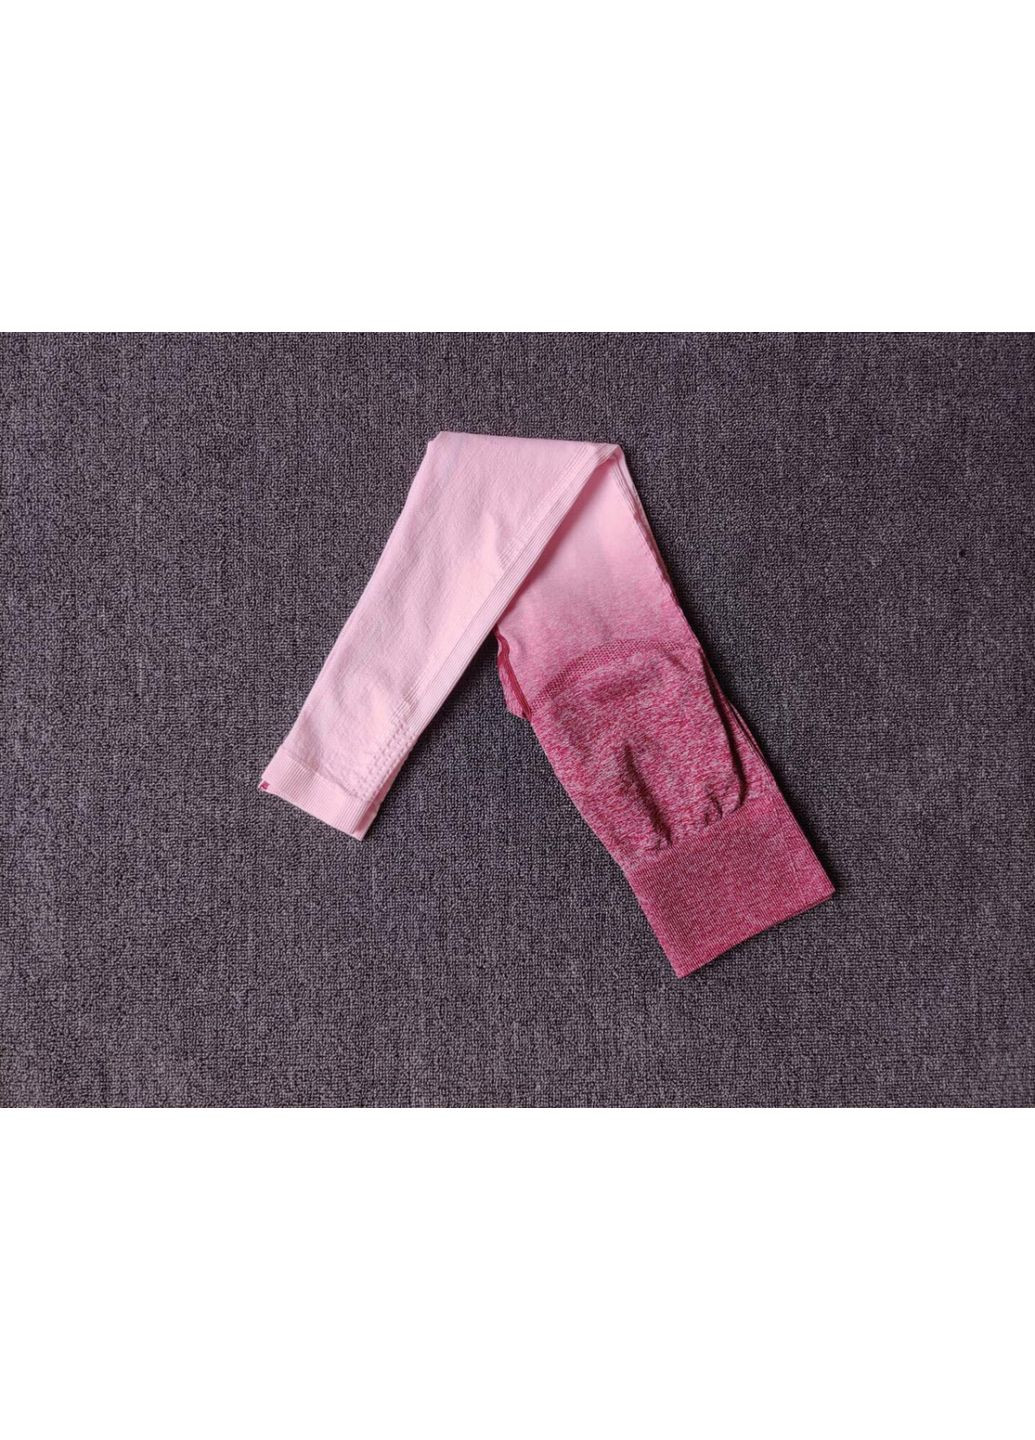 Легінси жіночі спортивні 6126 S рожеві Fashion (294067317)